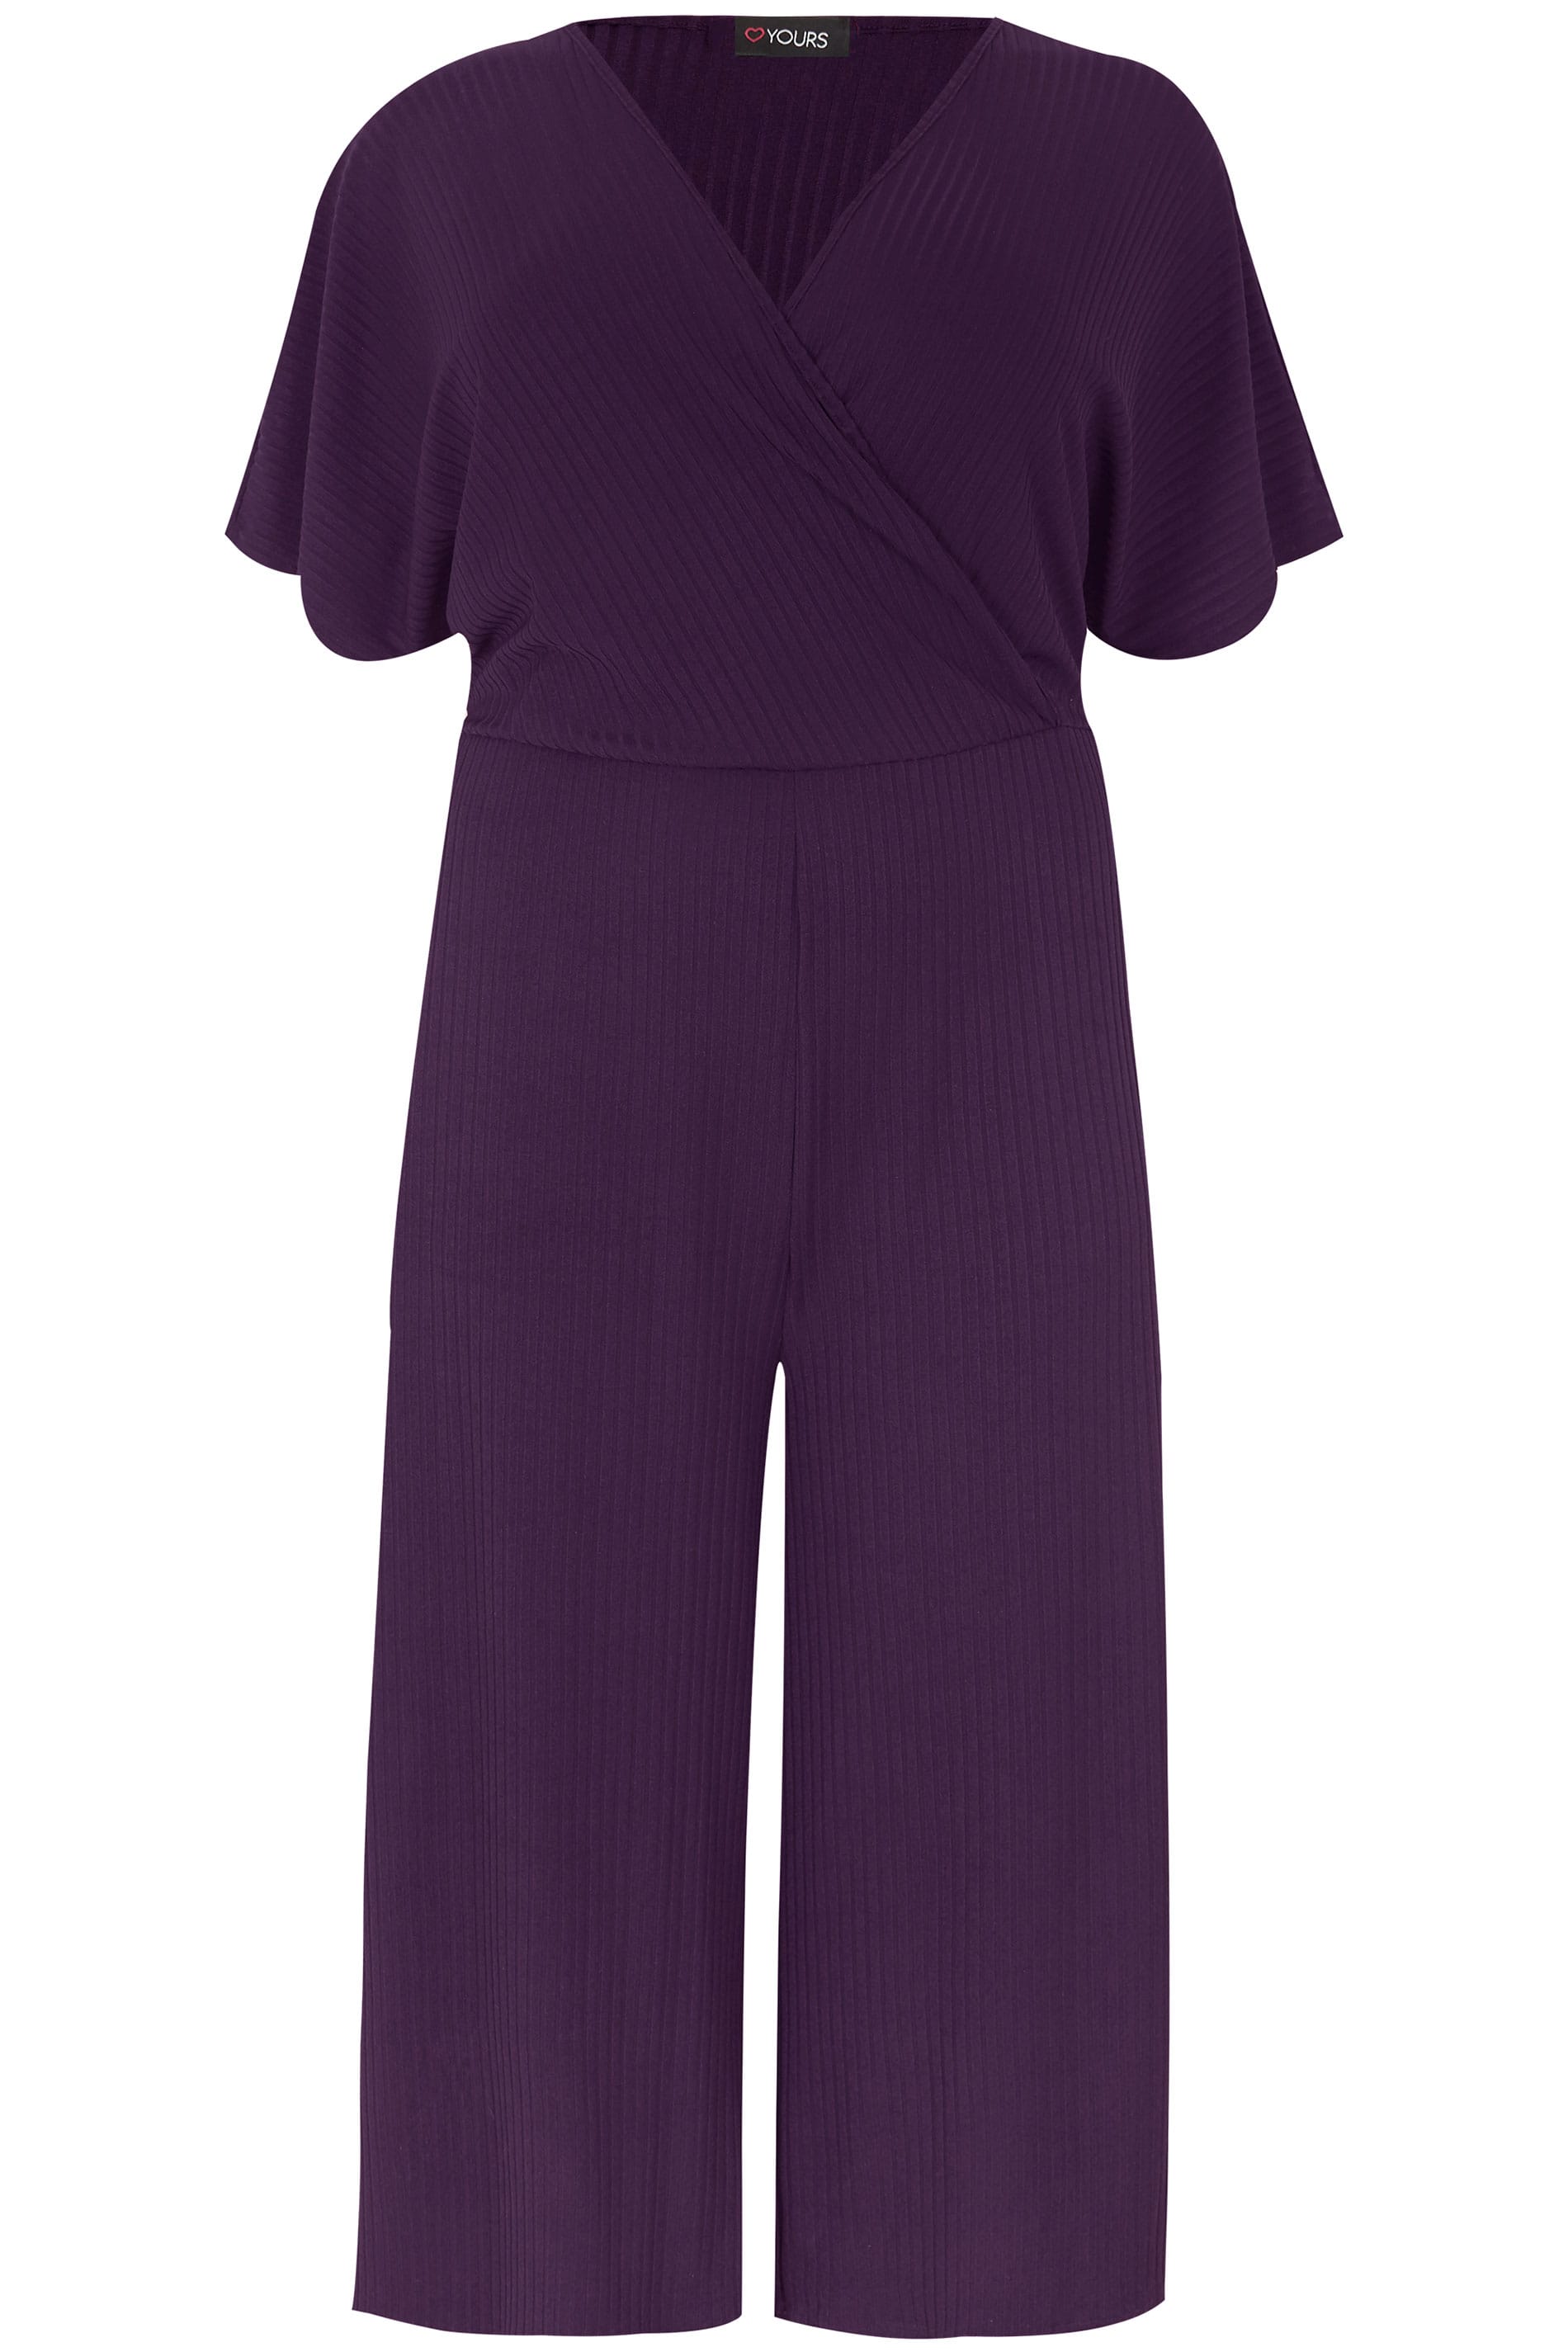 Dark Purple Wrap Front Culotte Jumpsuit , plus size 16 to 36